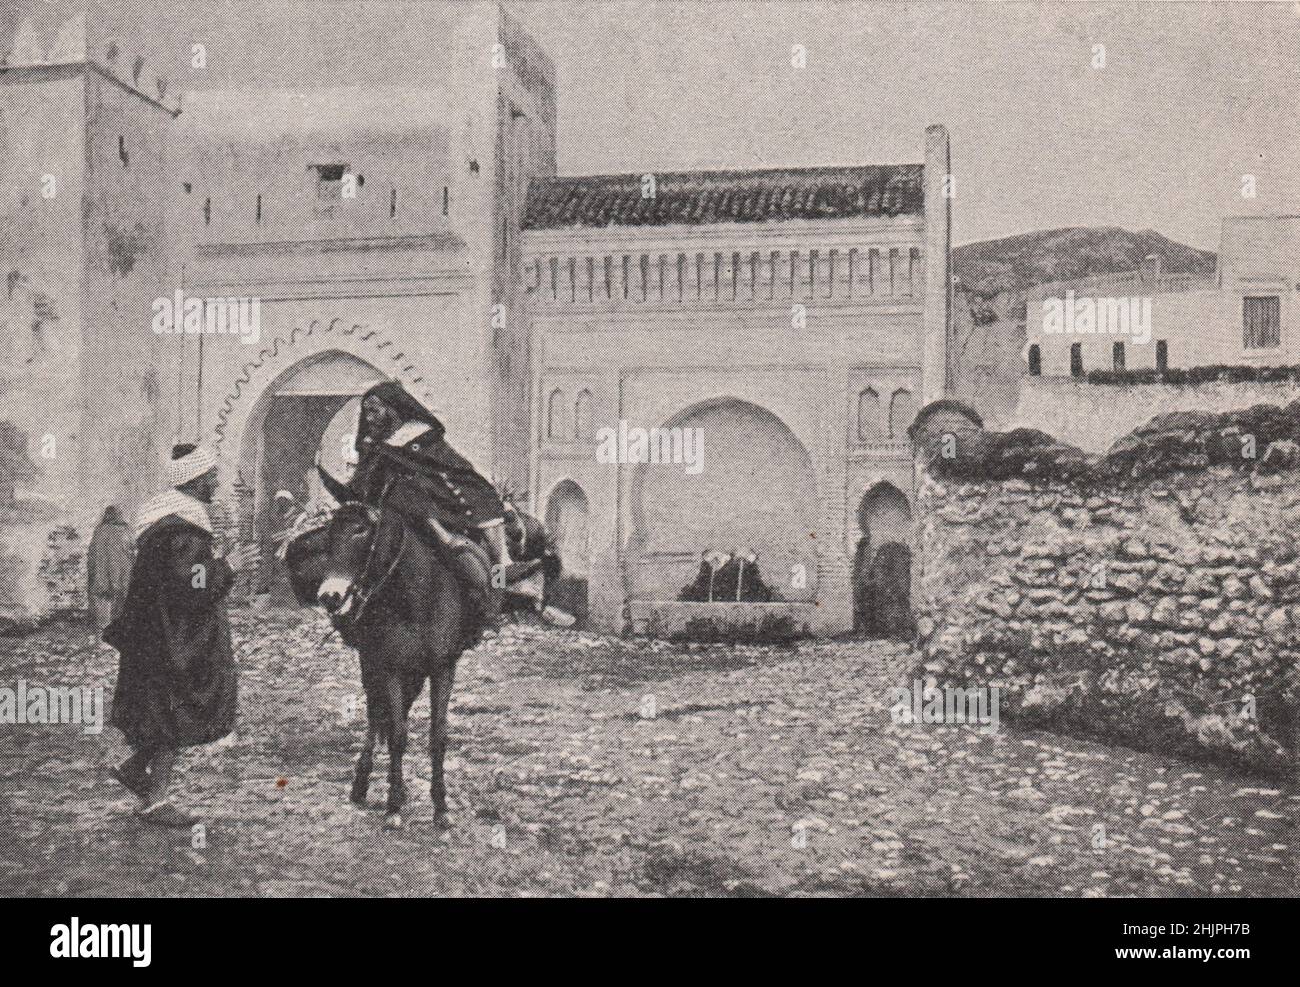 Nouveau du pays dans un coin de la vieille Tetuan. Maroc. Etats de Barbarie (1923) Banque D'Images